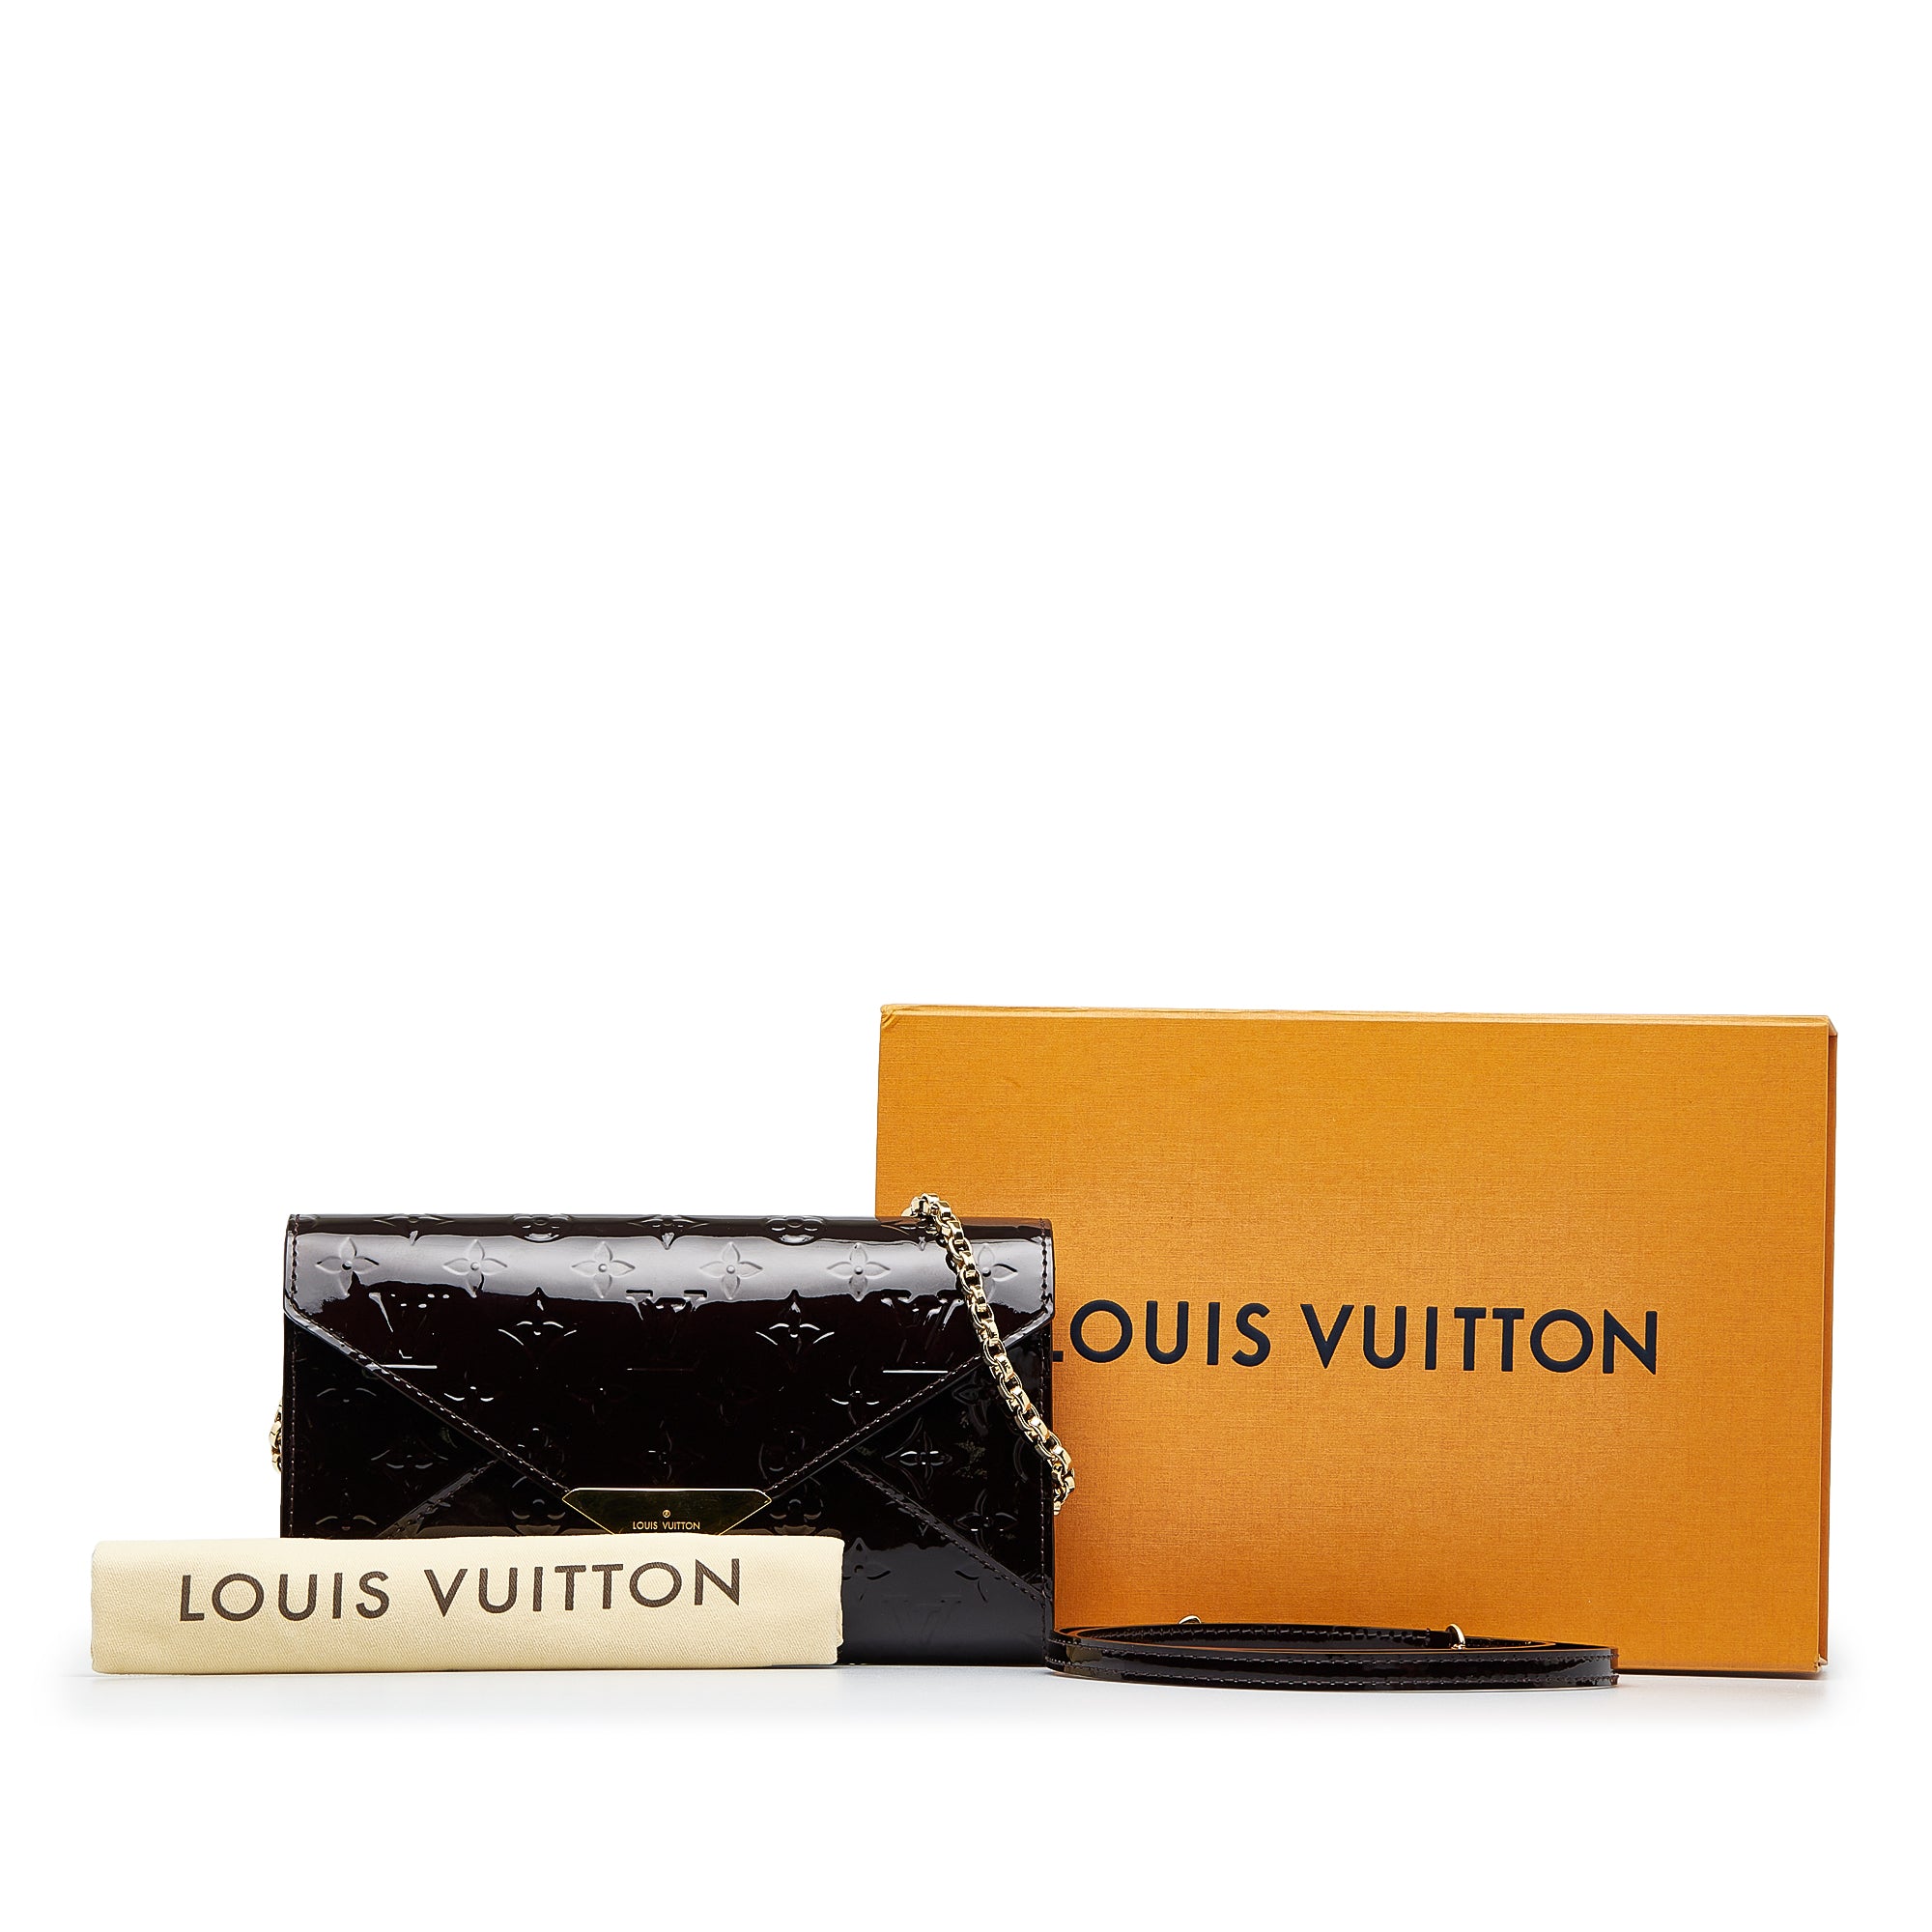 RARE Louis Vuitton Monogram Visionaire Portfolio M6VW6R7 041123